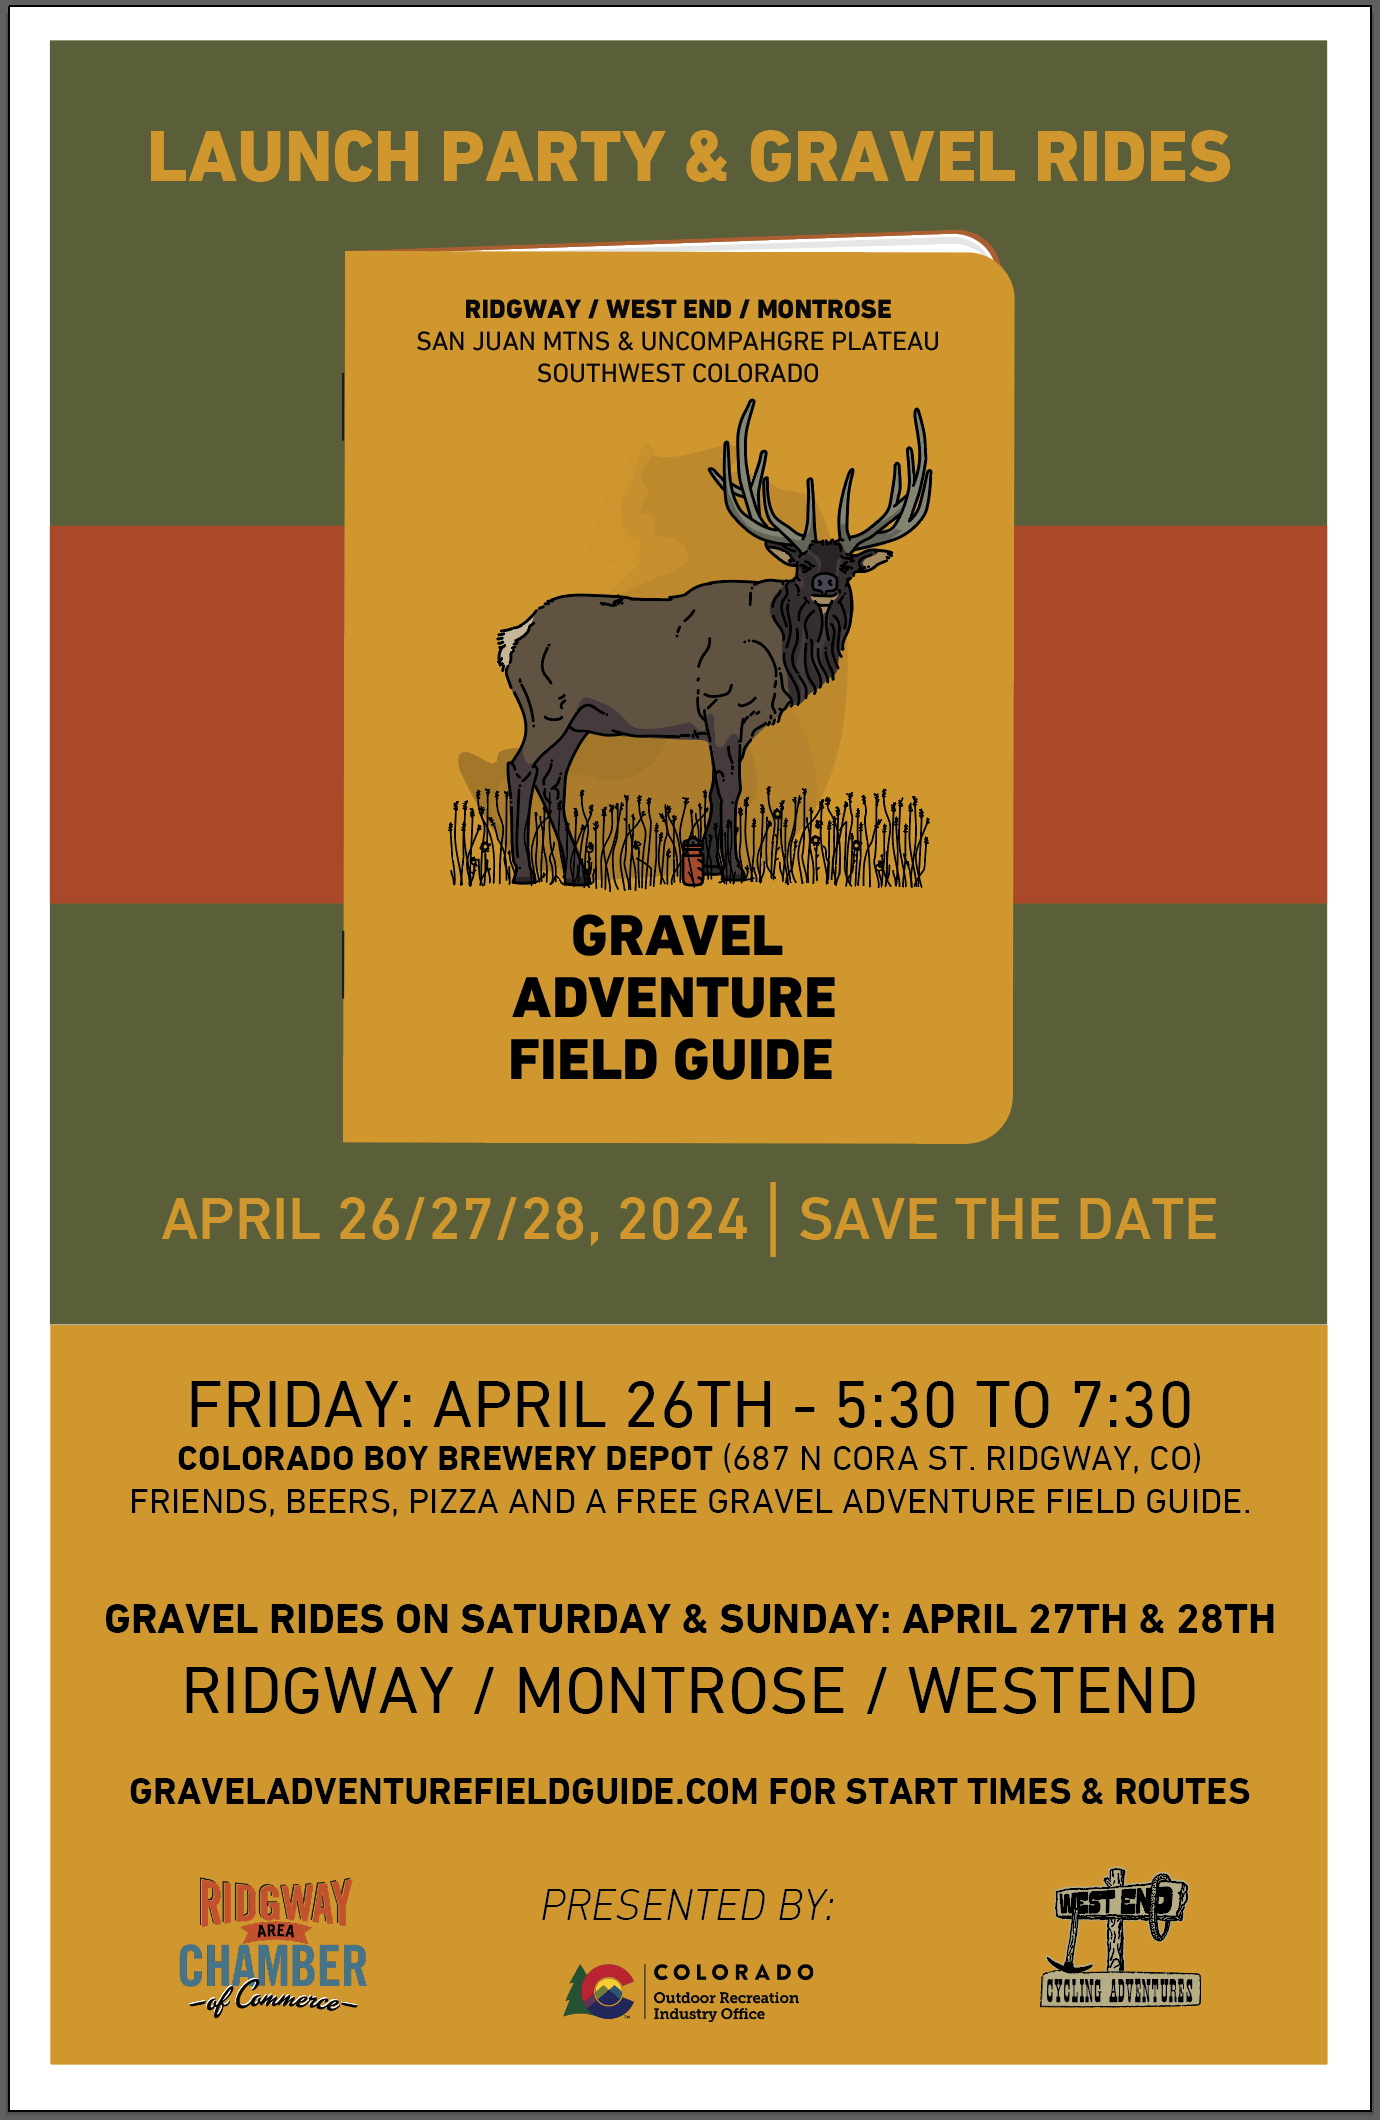 Launch Party & Gravel Rides - April 26, 27, 28